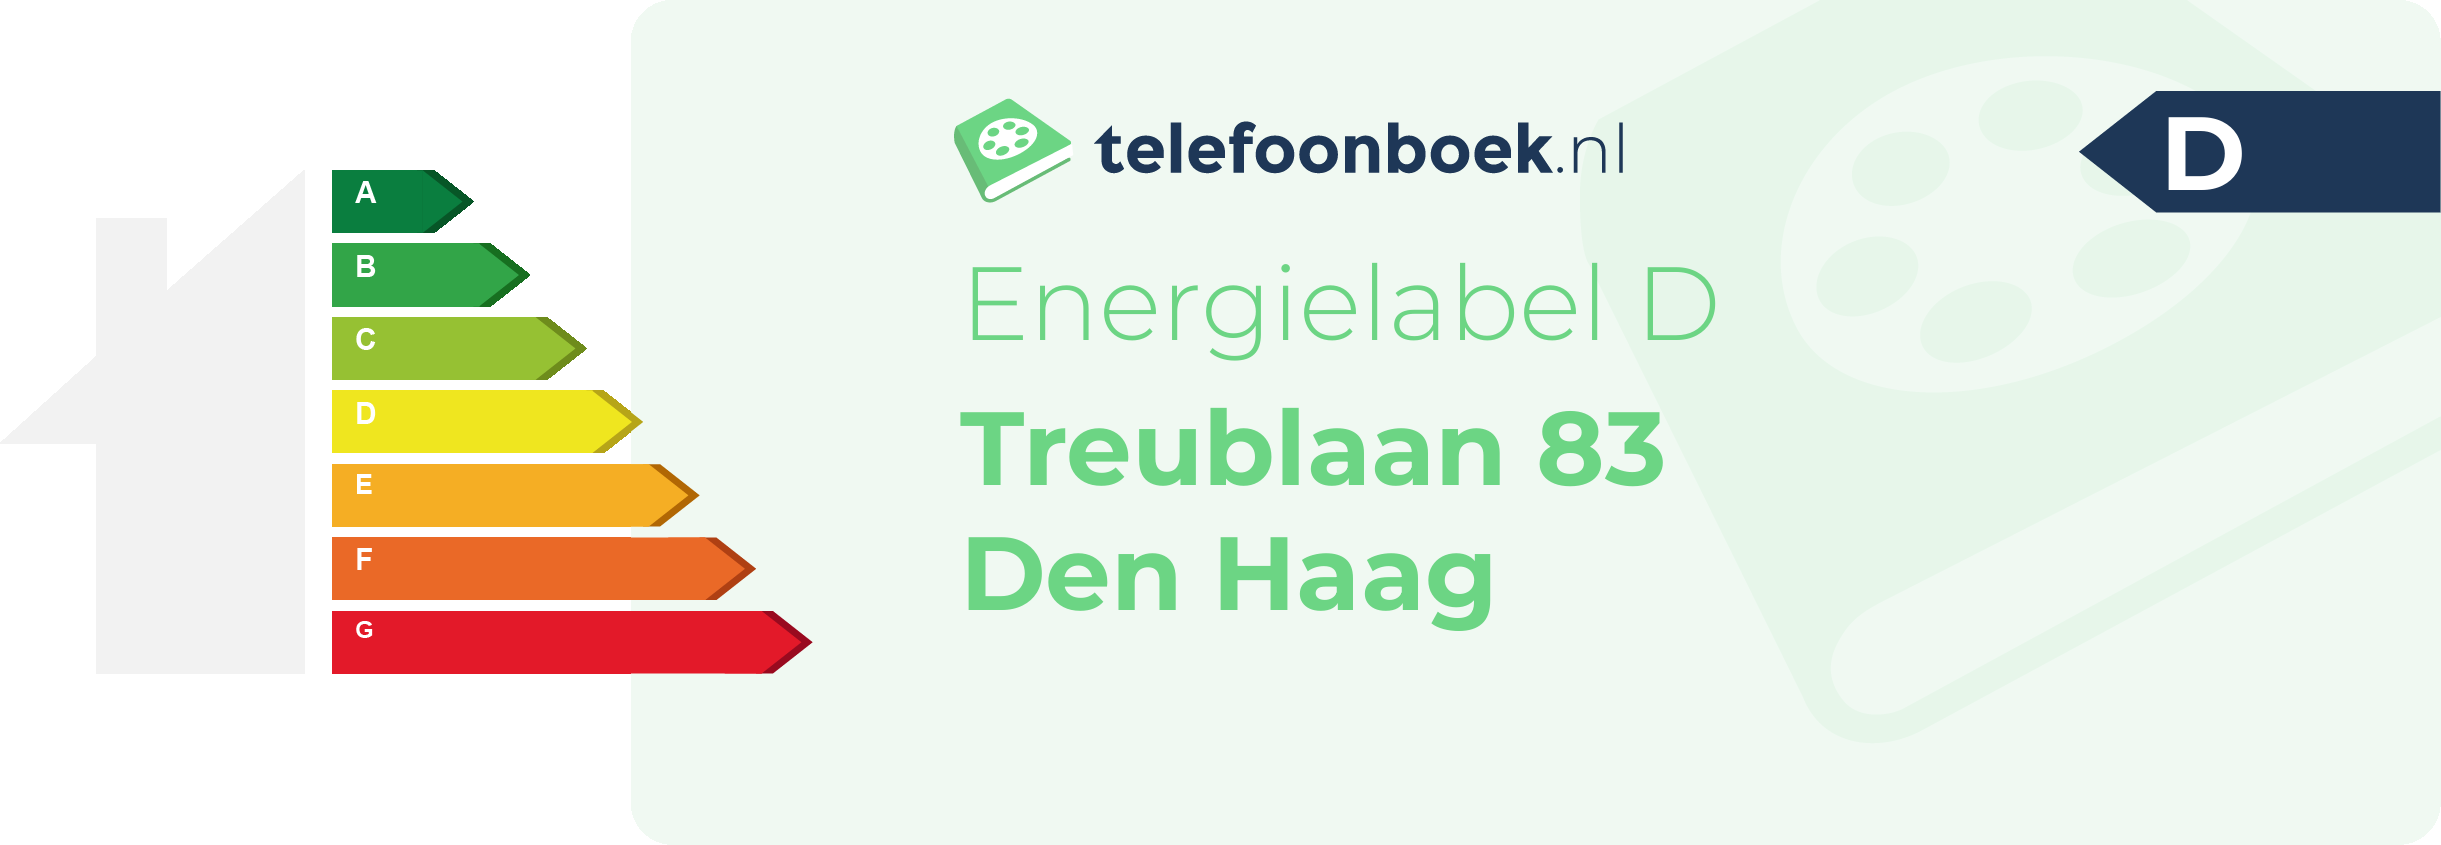 Energielabel Treublaan 83 Den Haag